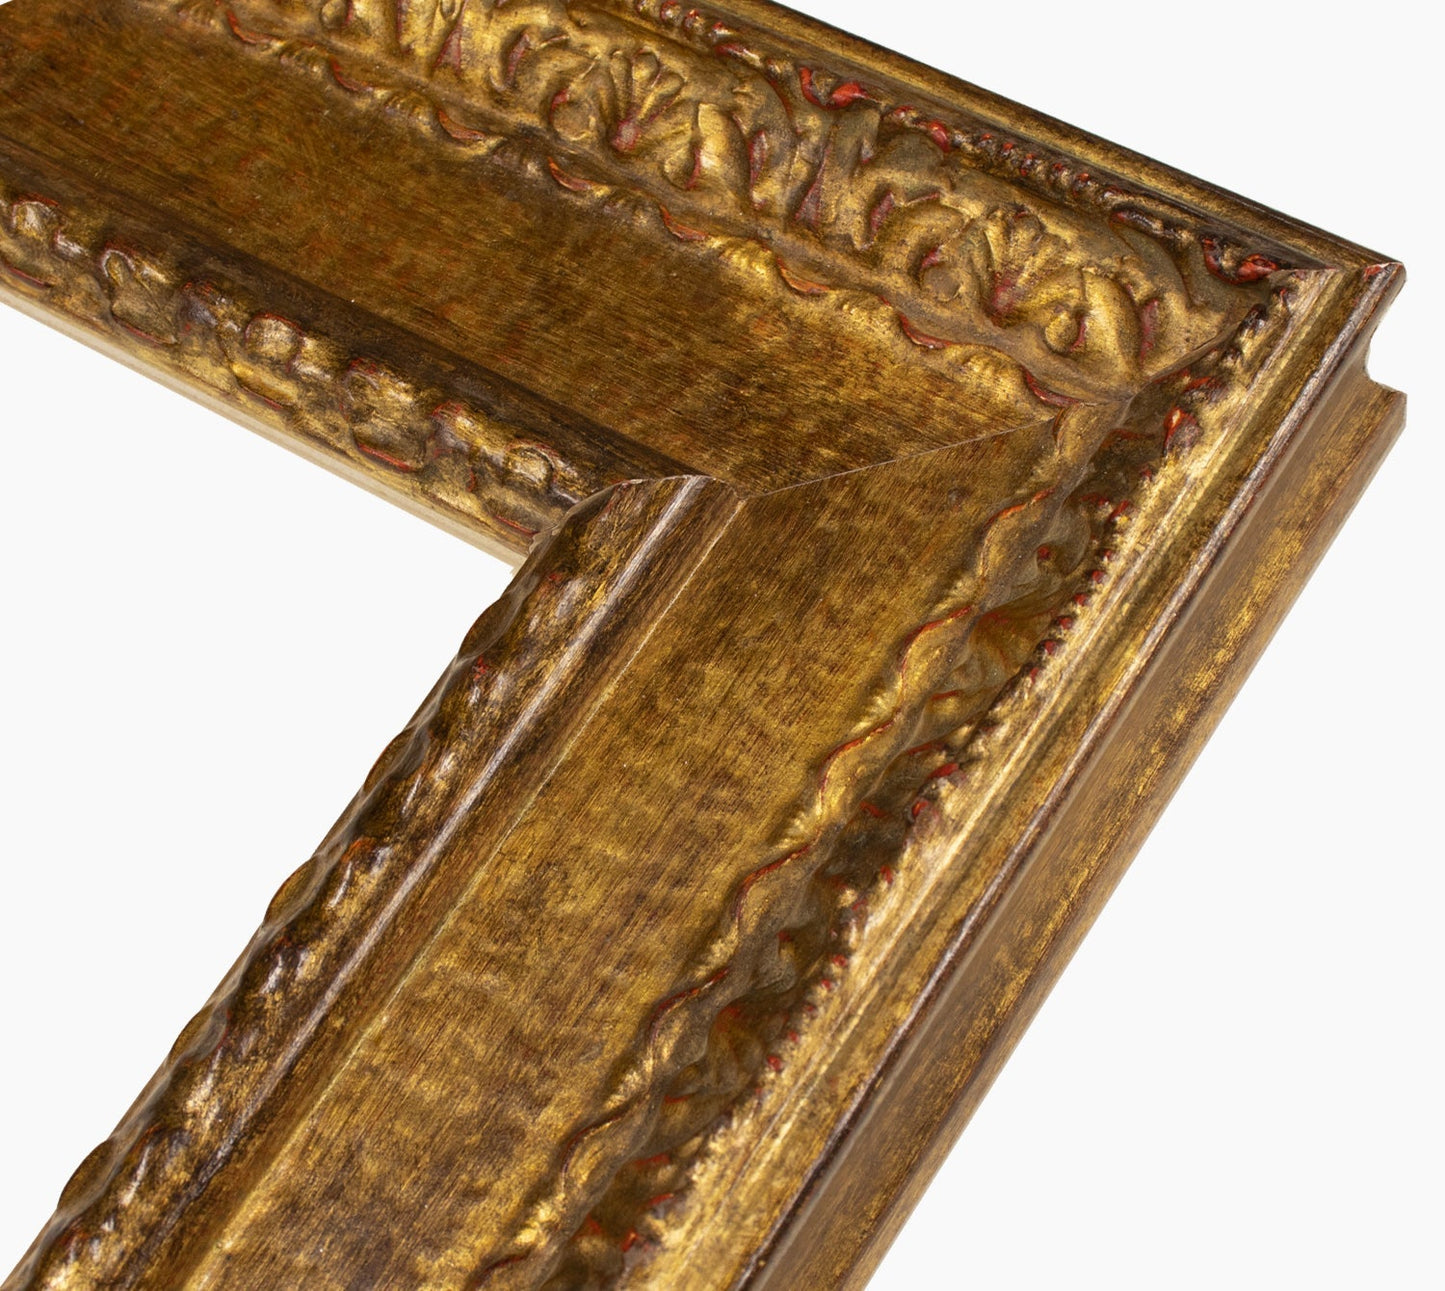 743.230 cadre en bois à la feuille d'or antique mesure de profil 100x53 mm Lombarda cornici S.n.c.